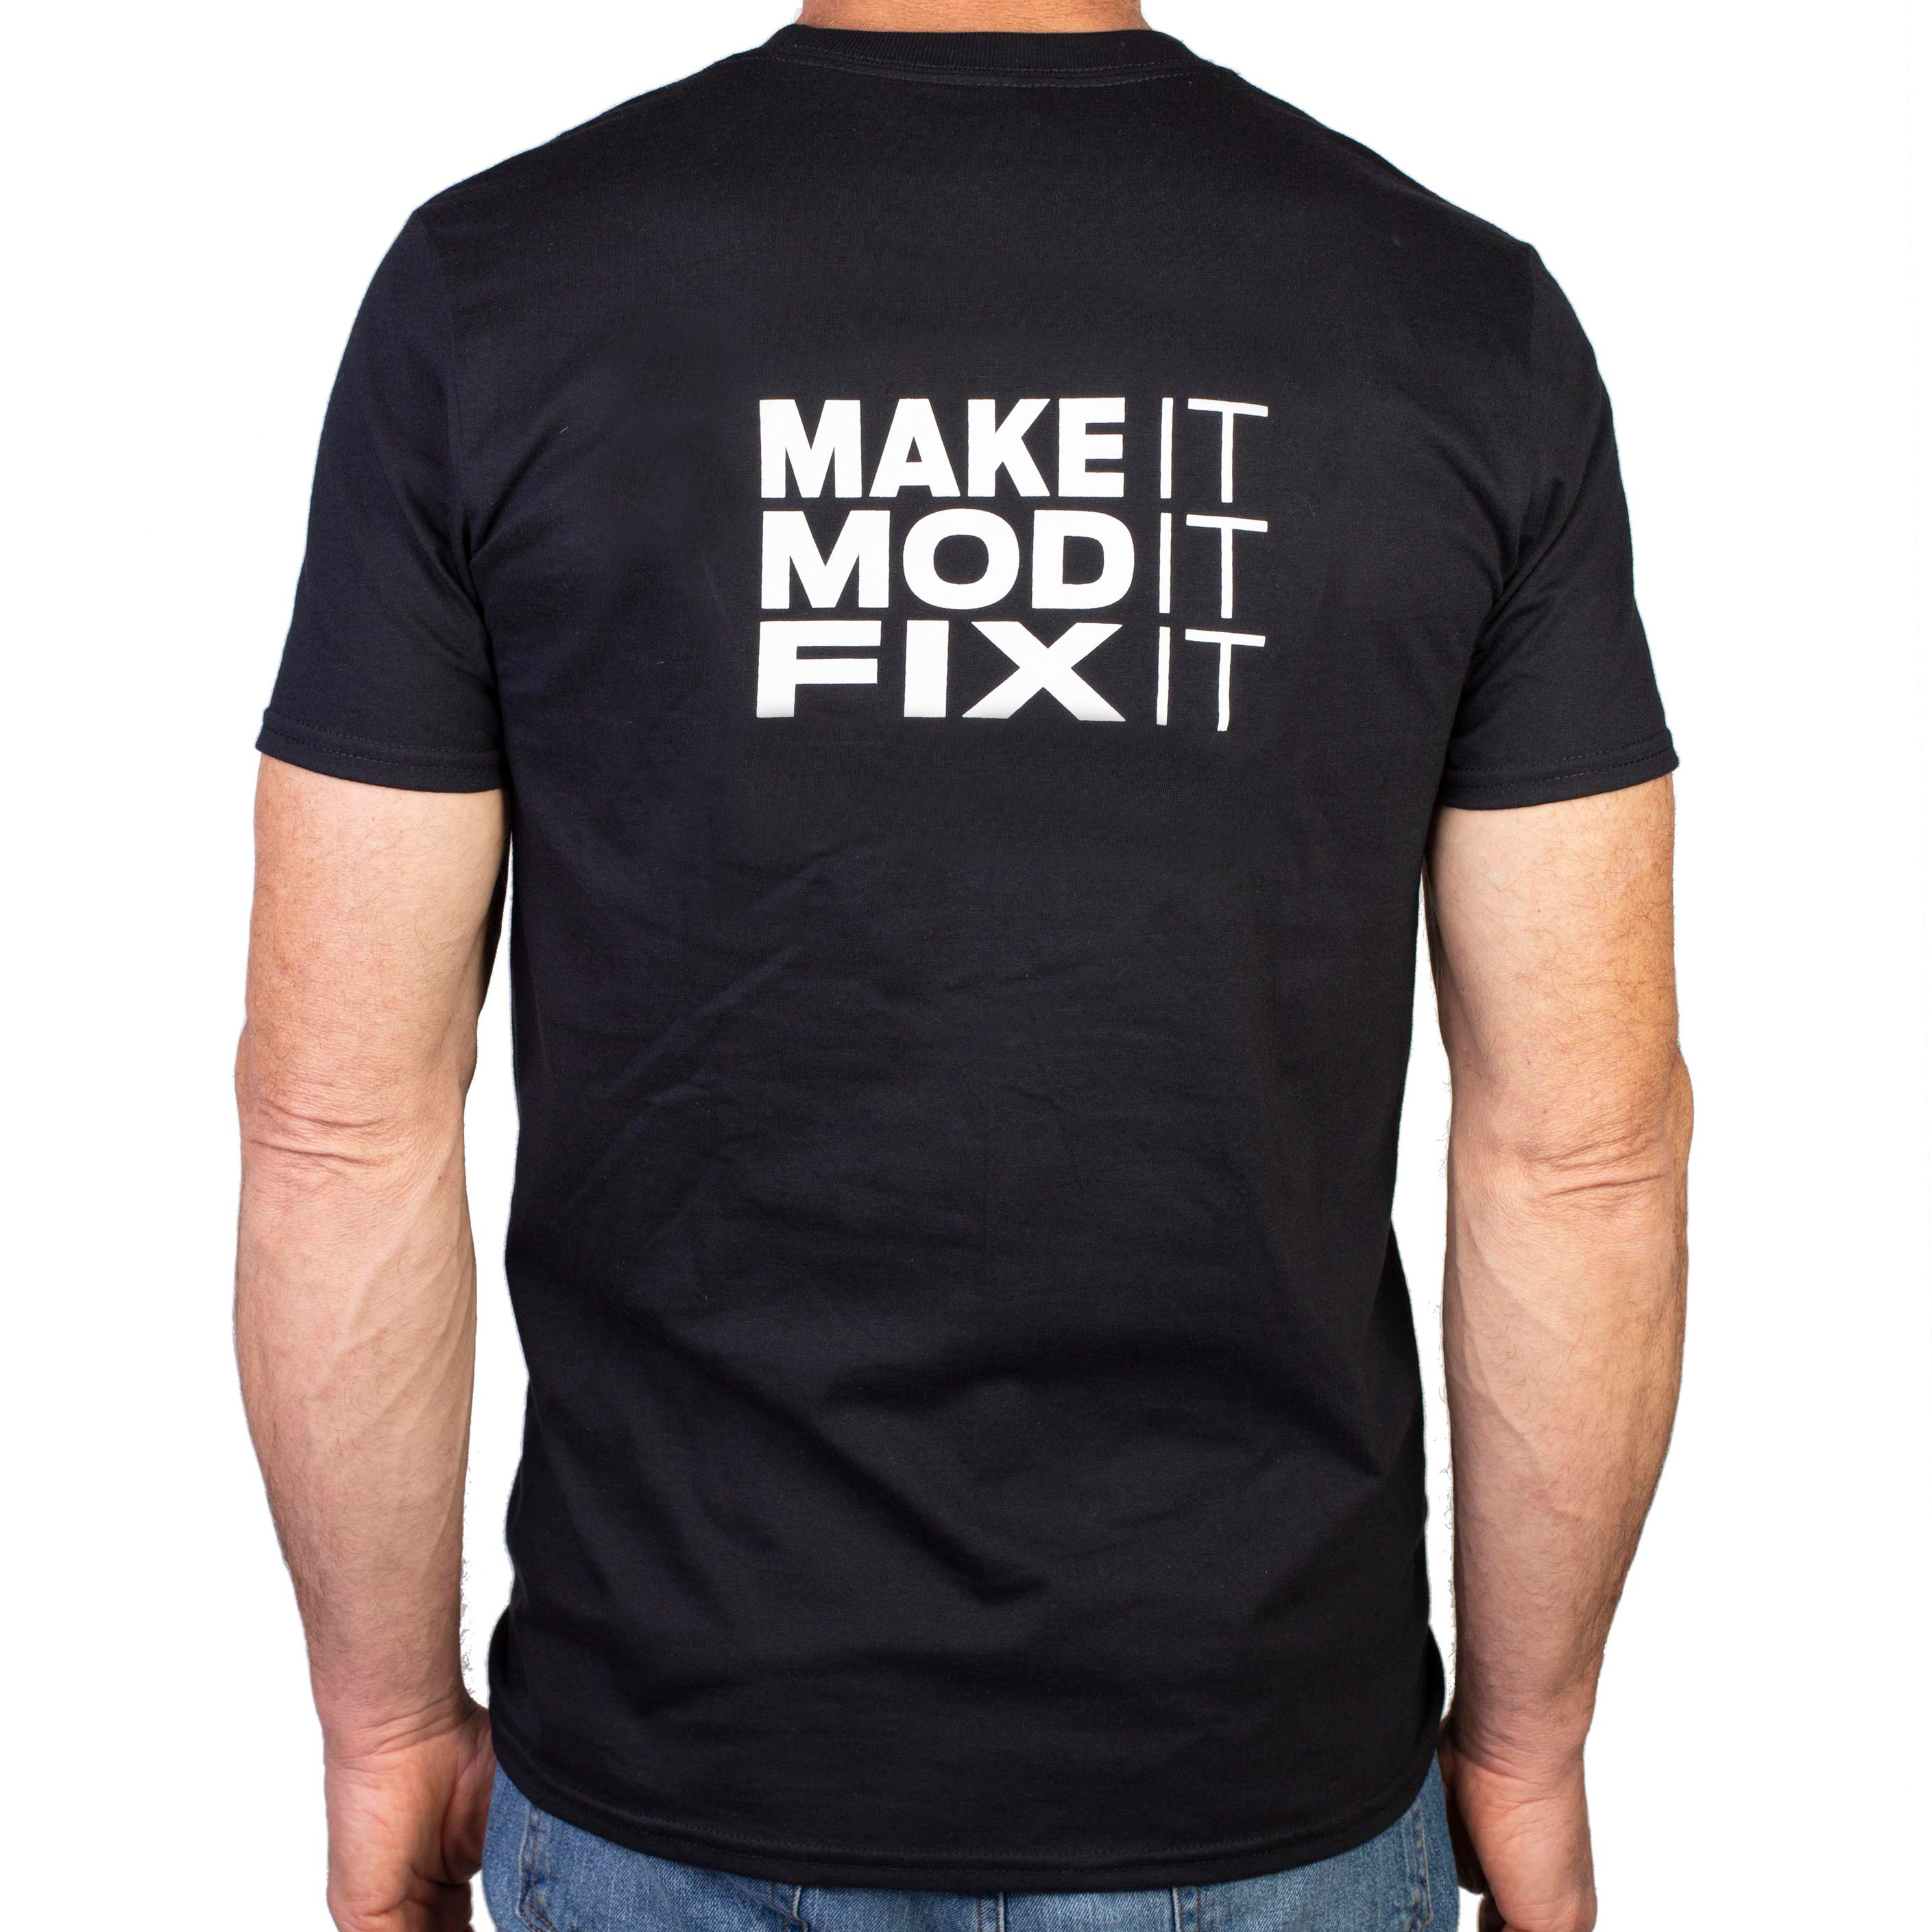 StewMac Make It, Mod It, Fix It T-Shirt